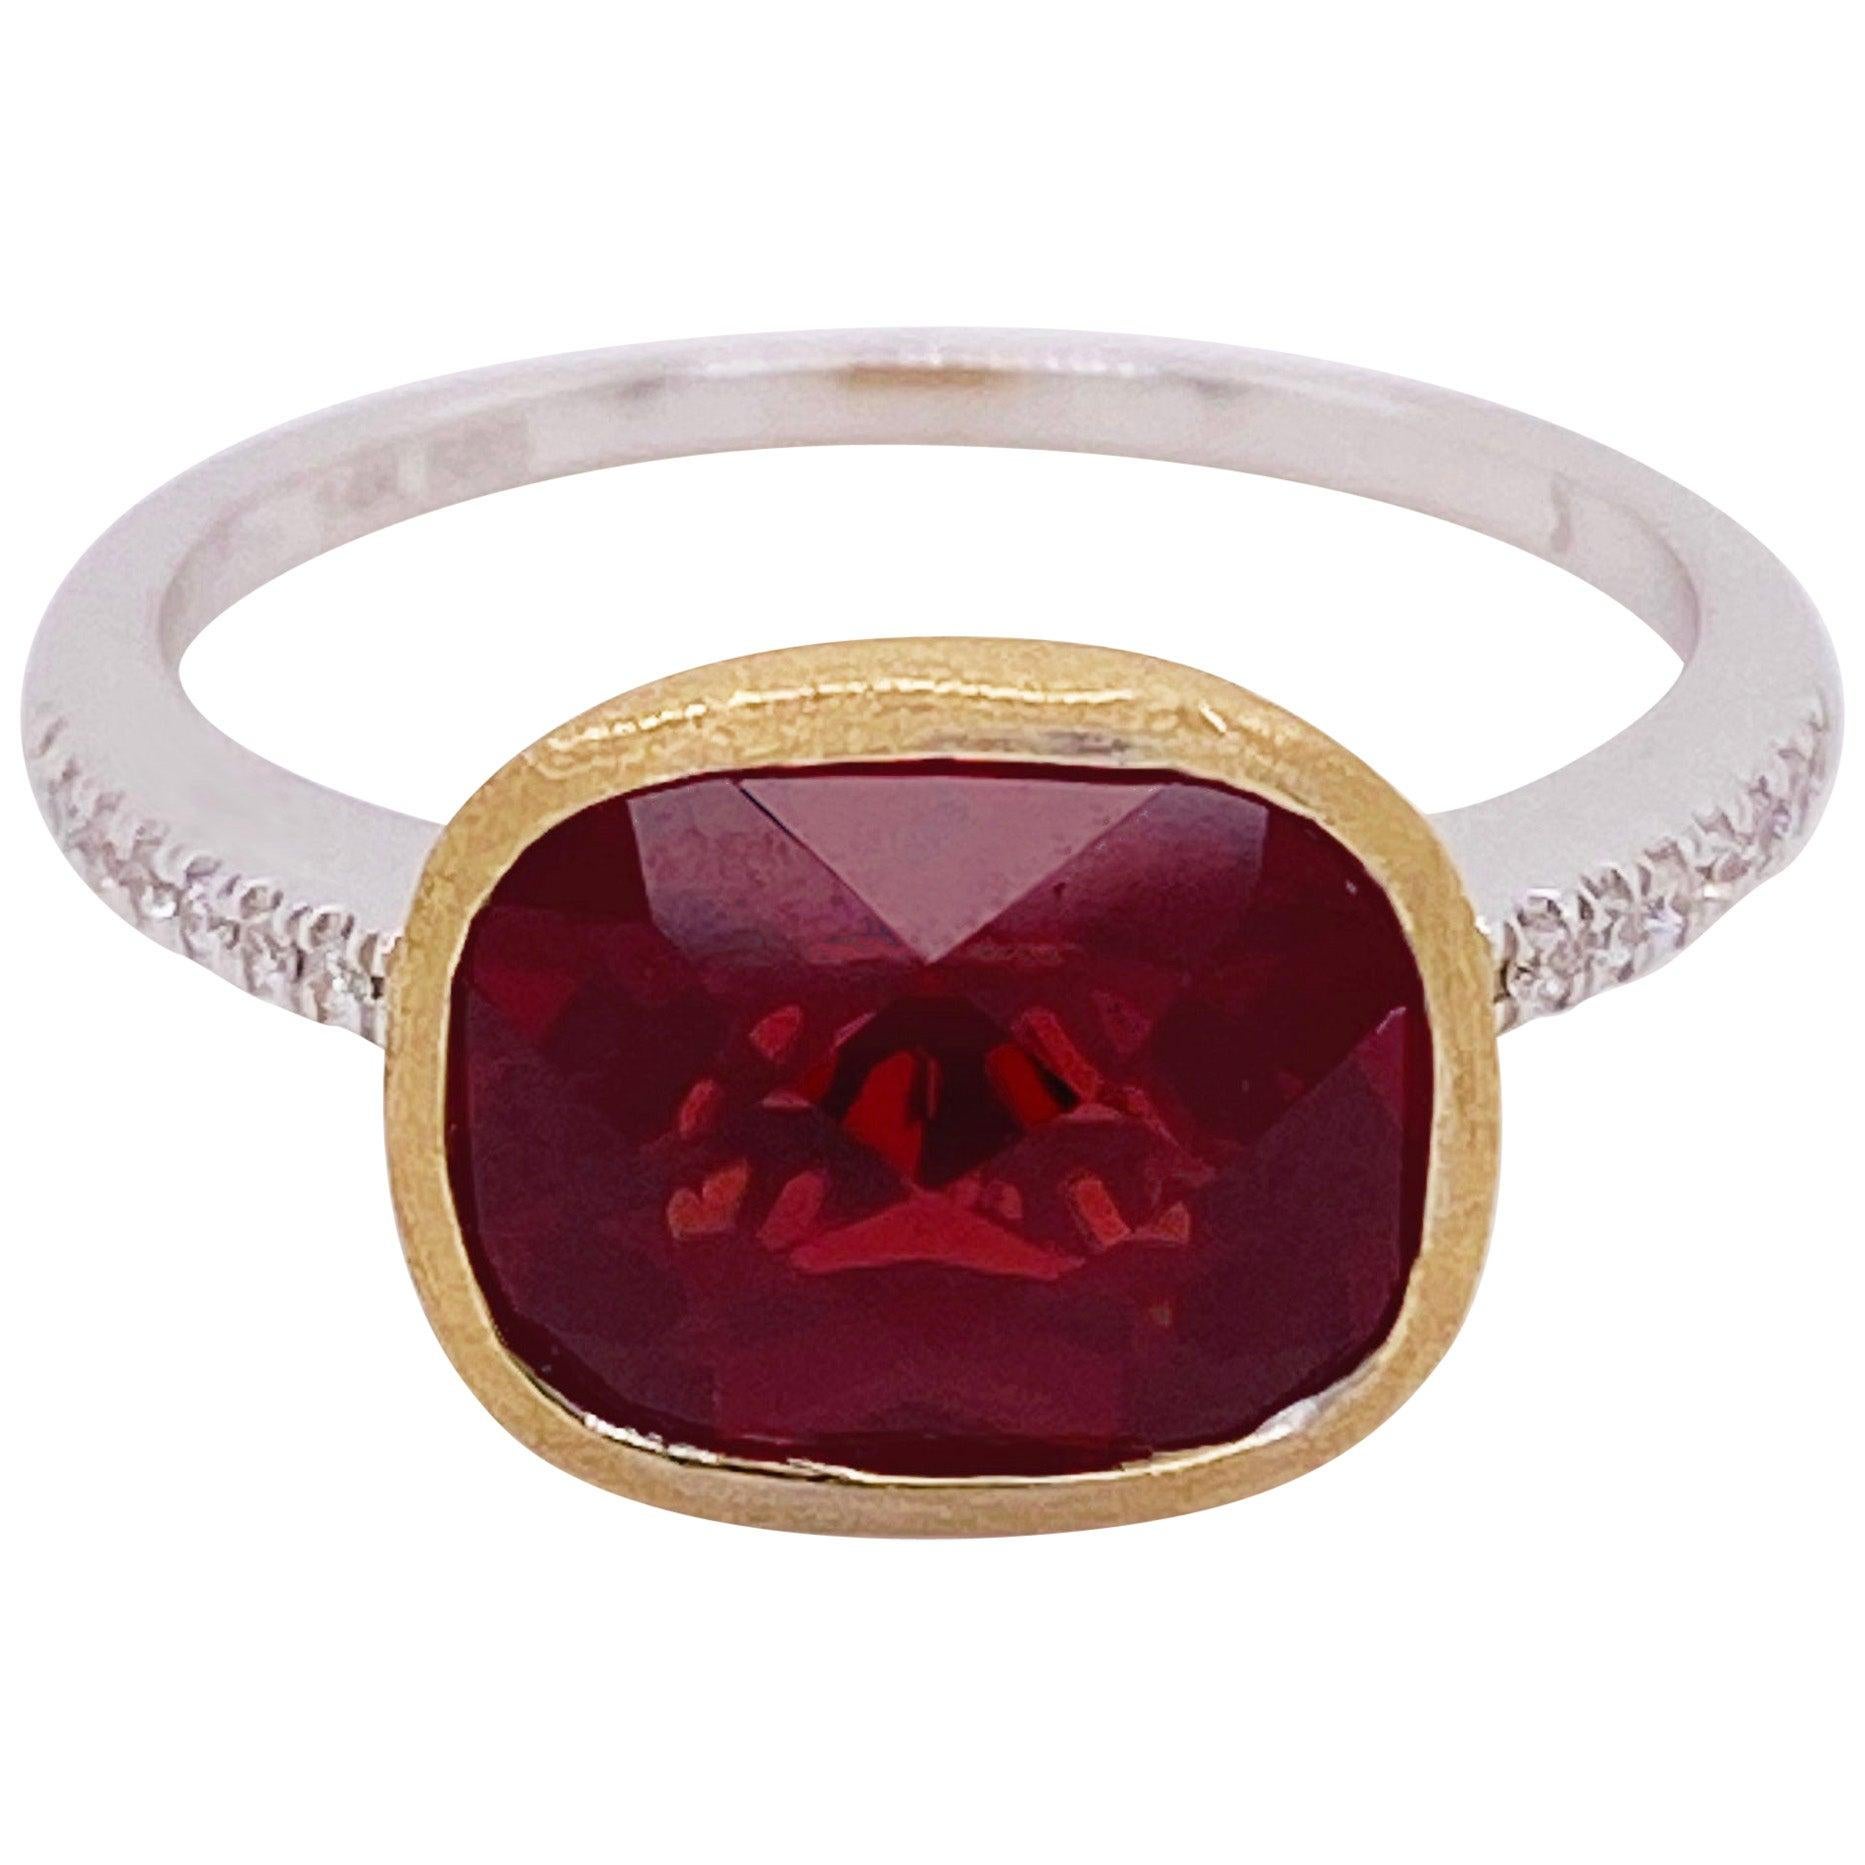 Granat-Diamant-Ring, roter Granat, gemischtes Metall, 14k Weiß- und Gelbgold, Satin